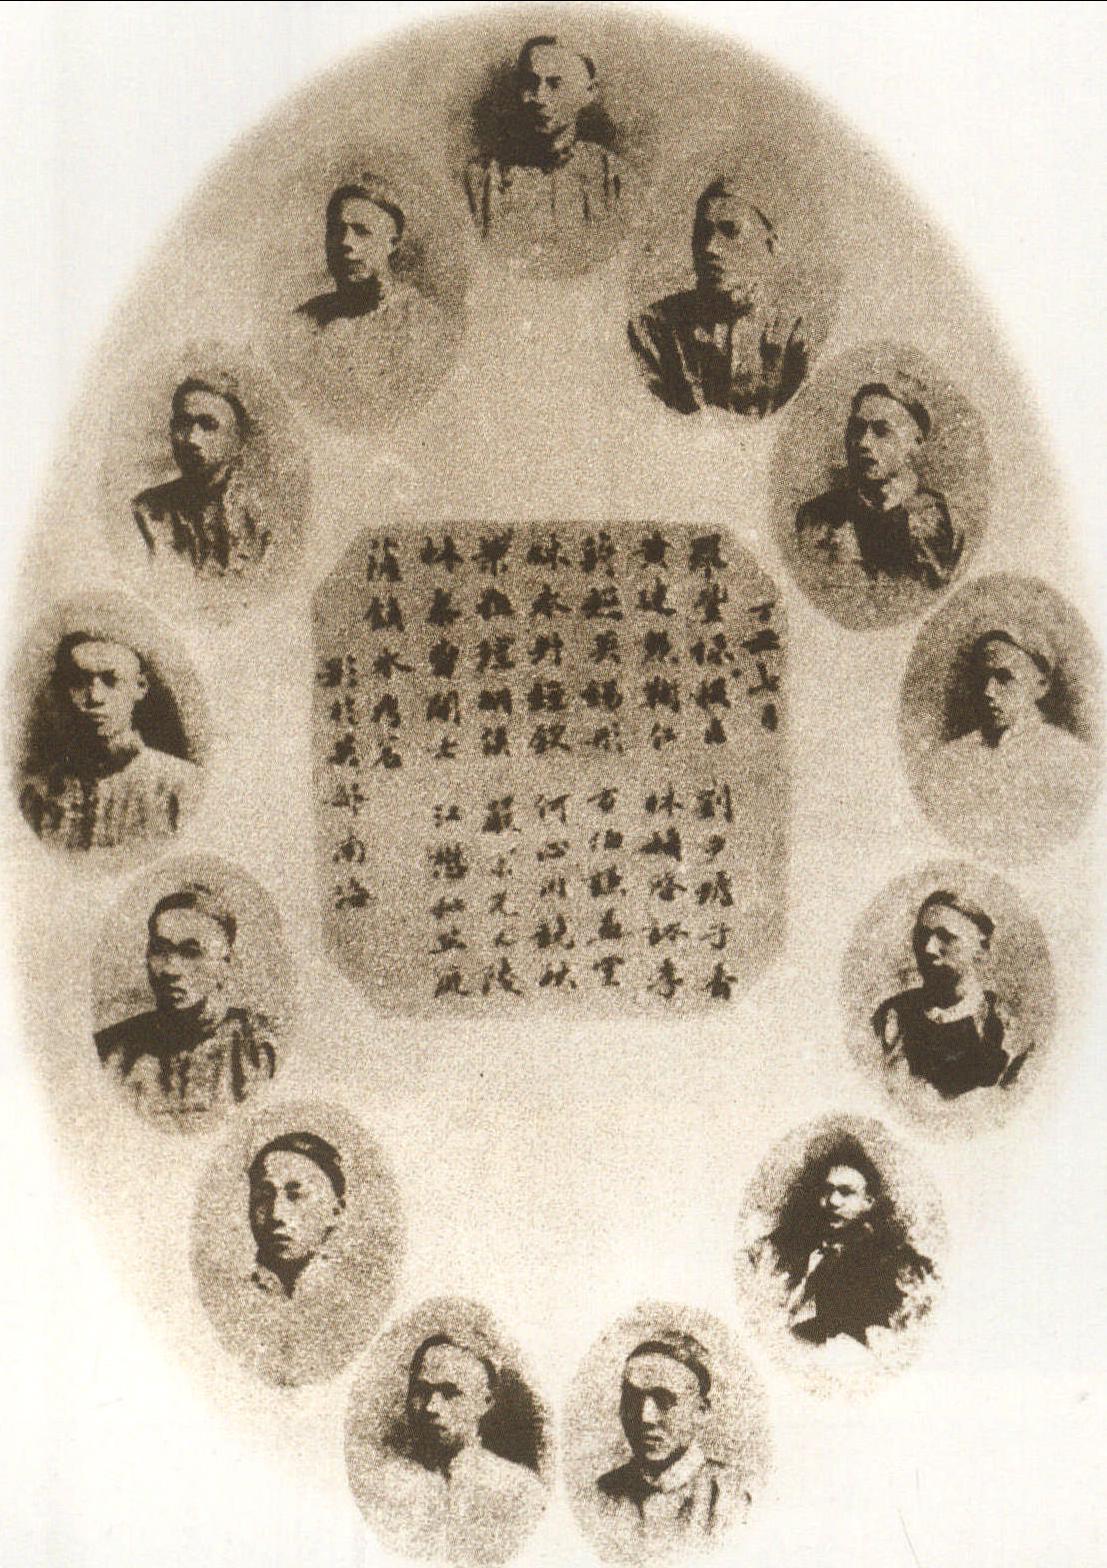 1877年福建船政学堂20余名学生赴英、法两国学习驾驶、制造，是为中国第一批赴欧洲留学的海军生。图中有: 罗丰禄( 上中)、黄建勋(右1)、蒋超英(左1)、林永升(右2)、叶祖珪(左2)、林泰曾(右3)、萨镇冰(左3)、刘步蟾(右4)、林颖启(左4)、方伯谦(右5)